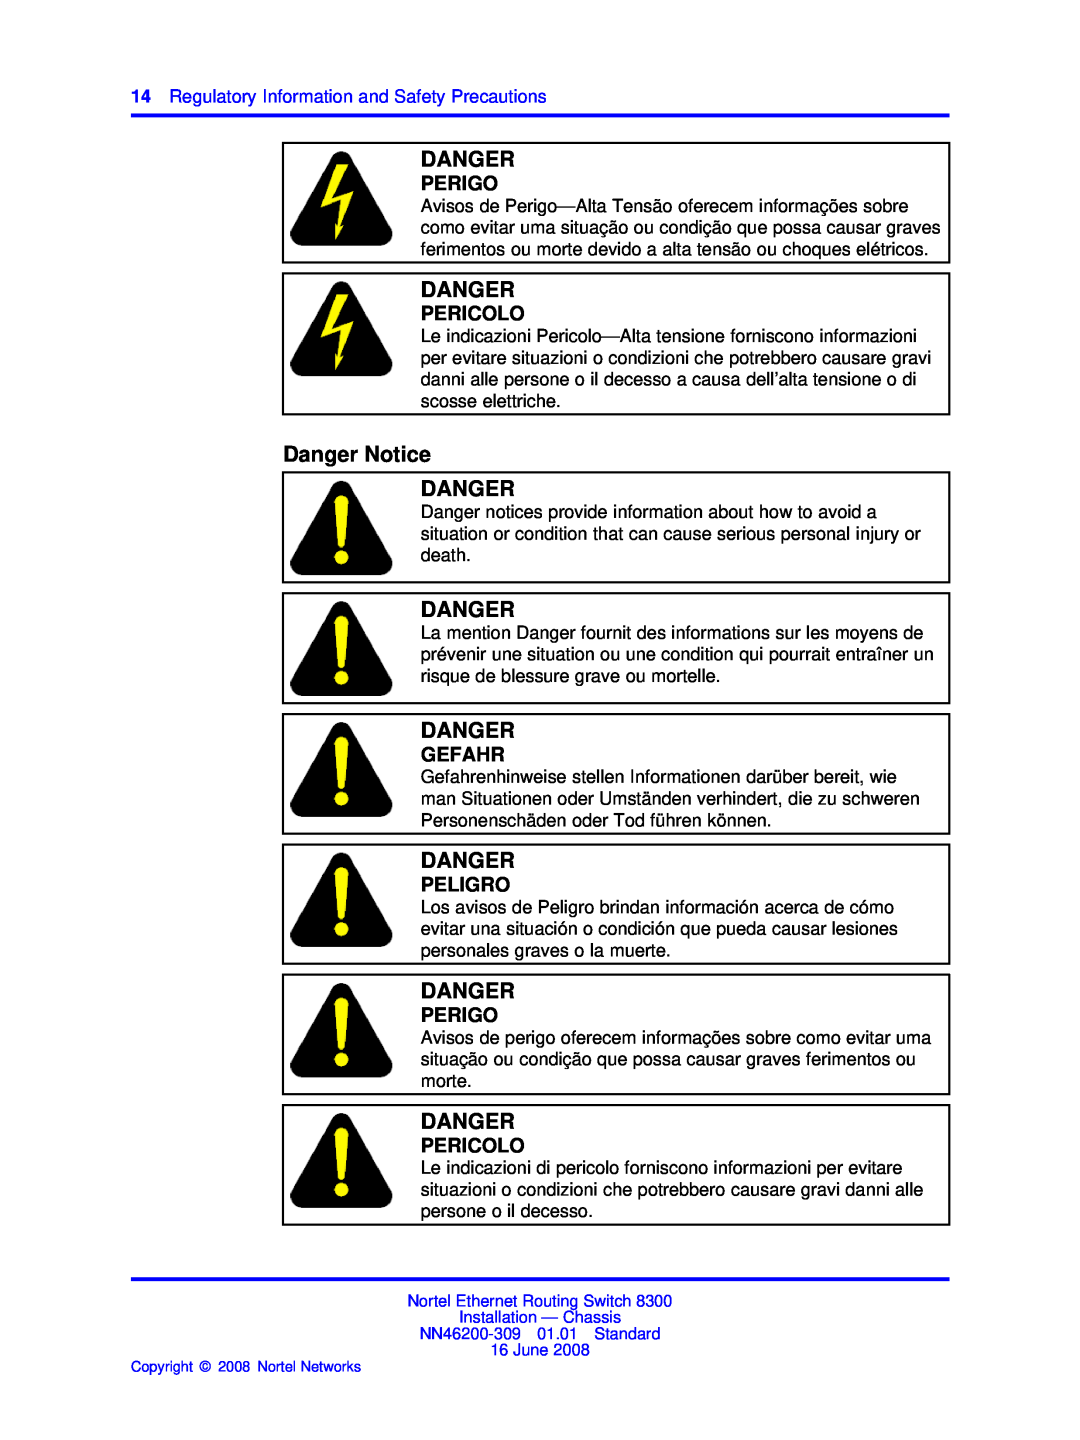 Nortel Networks 8310, 8306 manual Danger Notice DANGER, Perigo, Pericolo, Gefahr, Peligro 